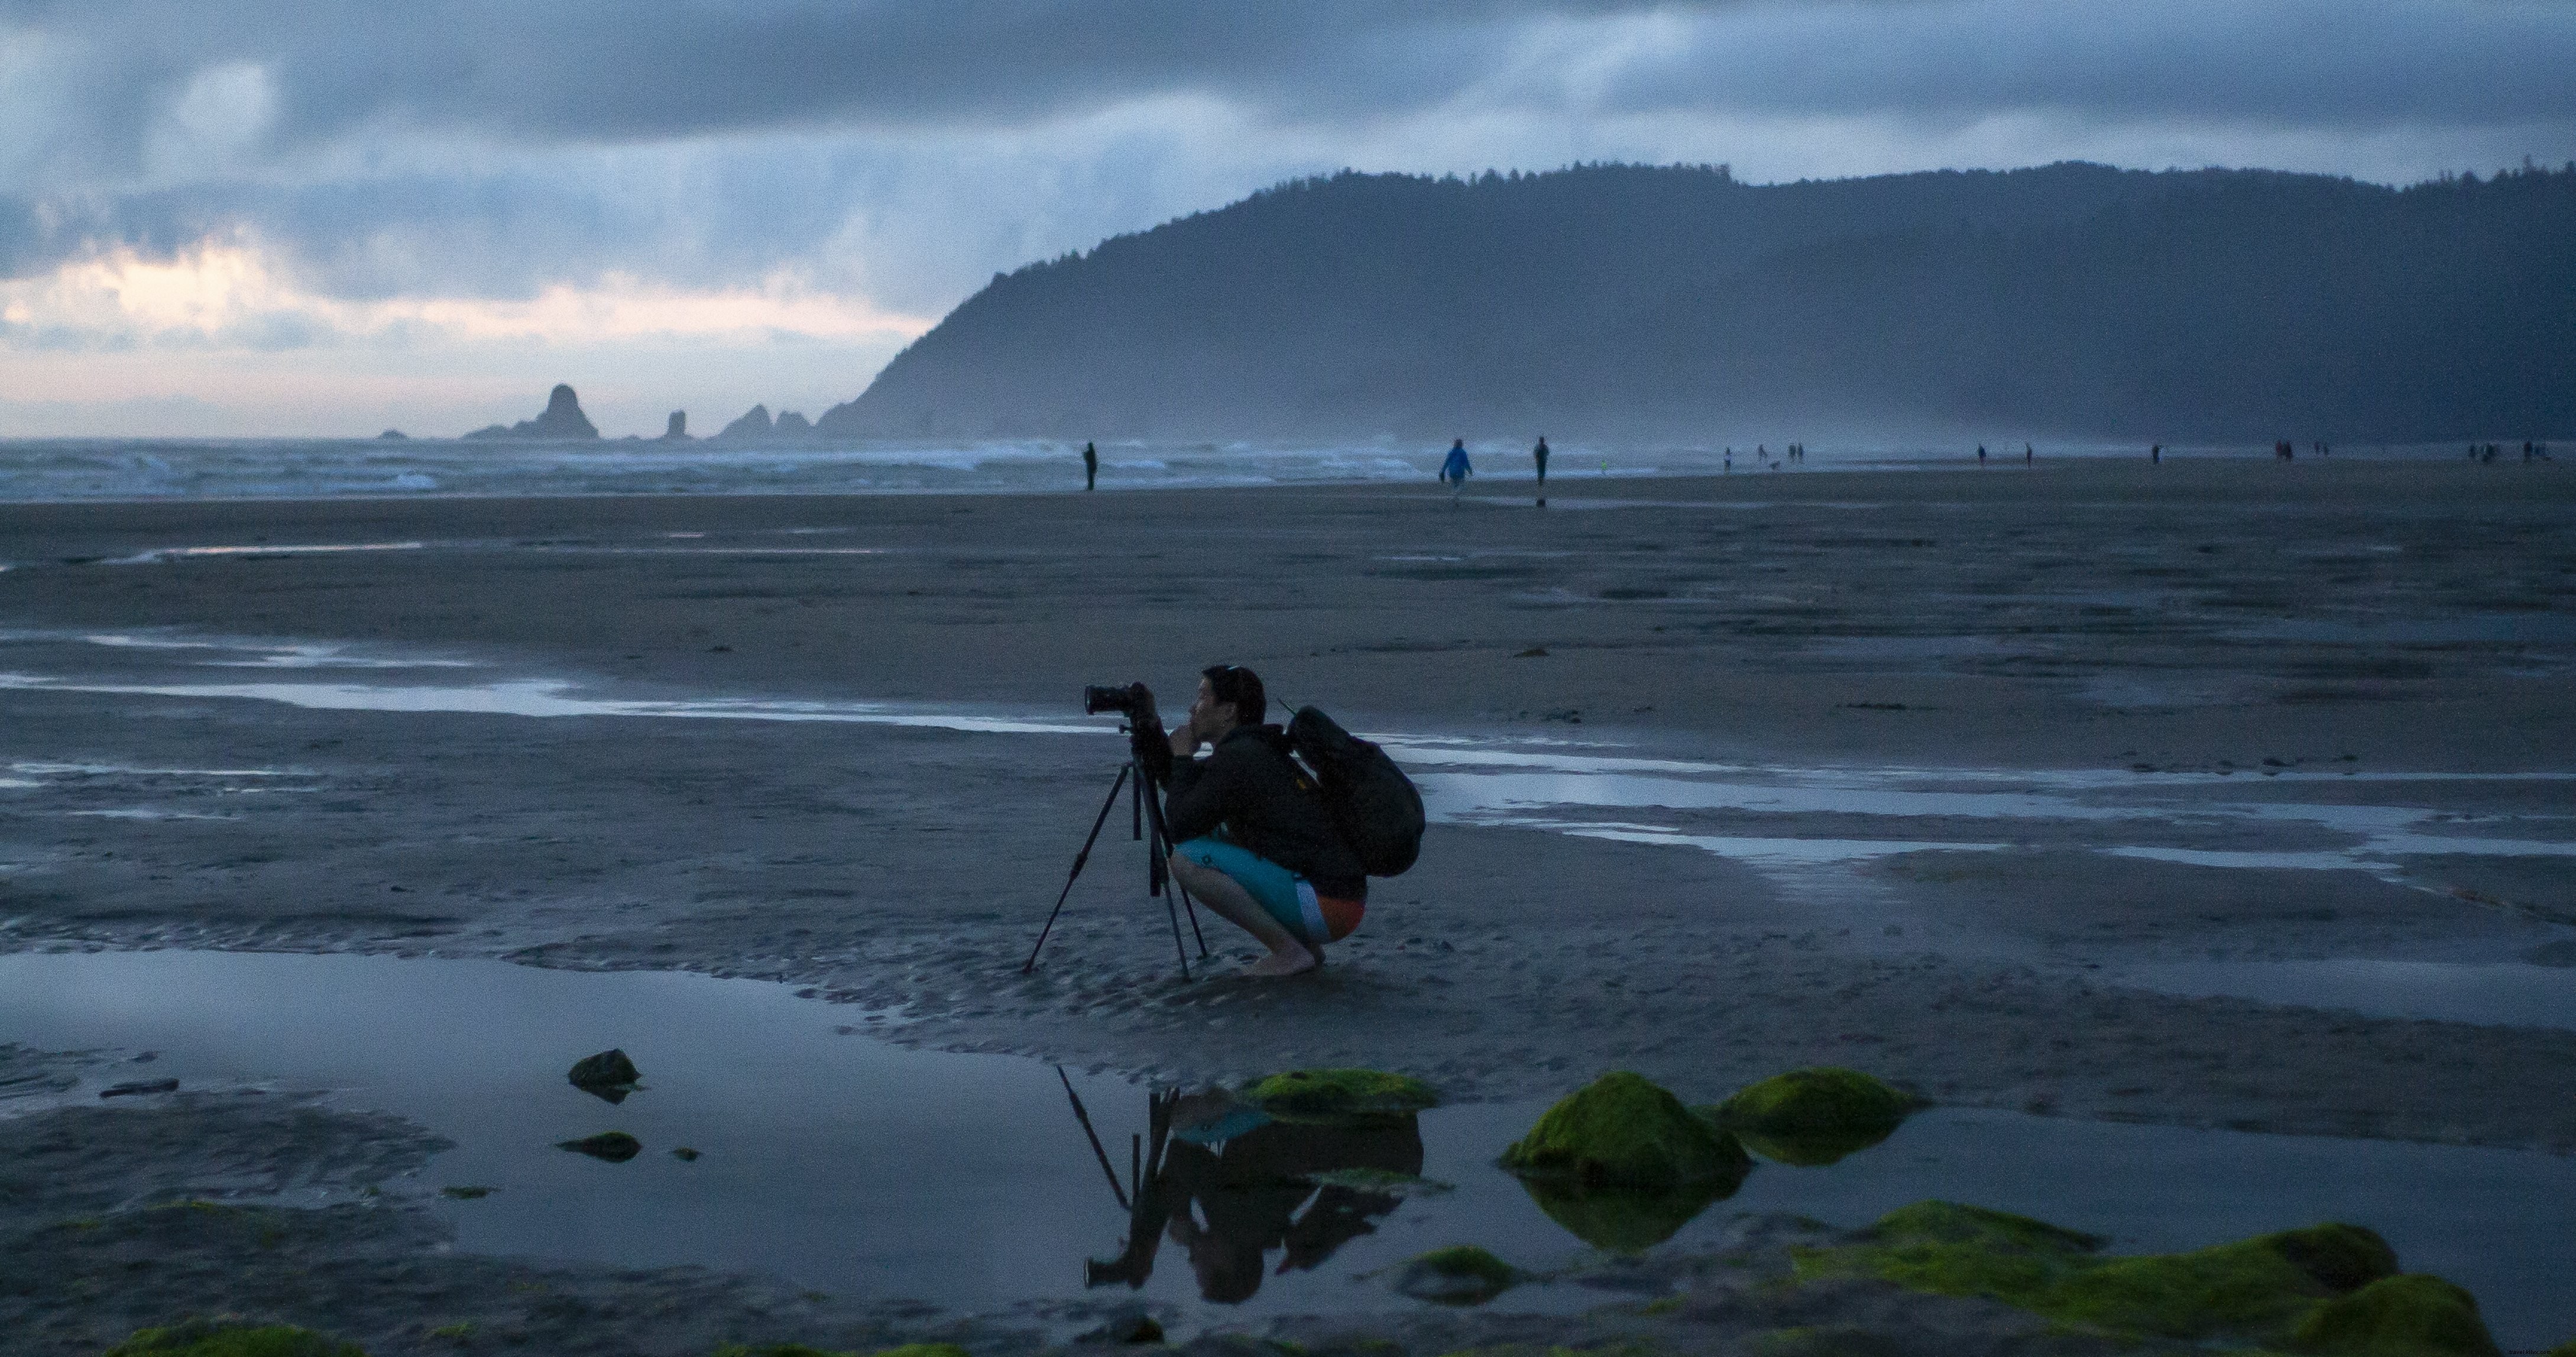 写真家が霧のビーチの写真で彼の三脚にしゃがむ